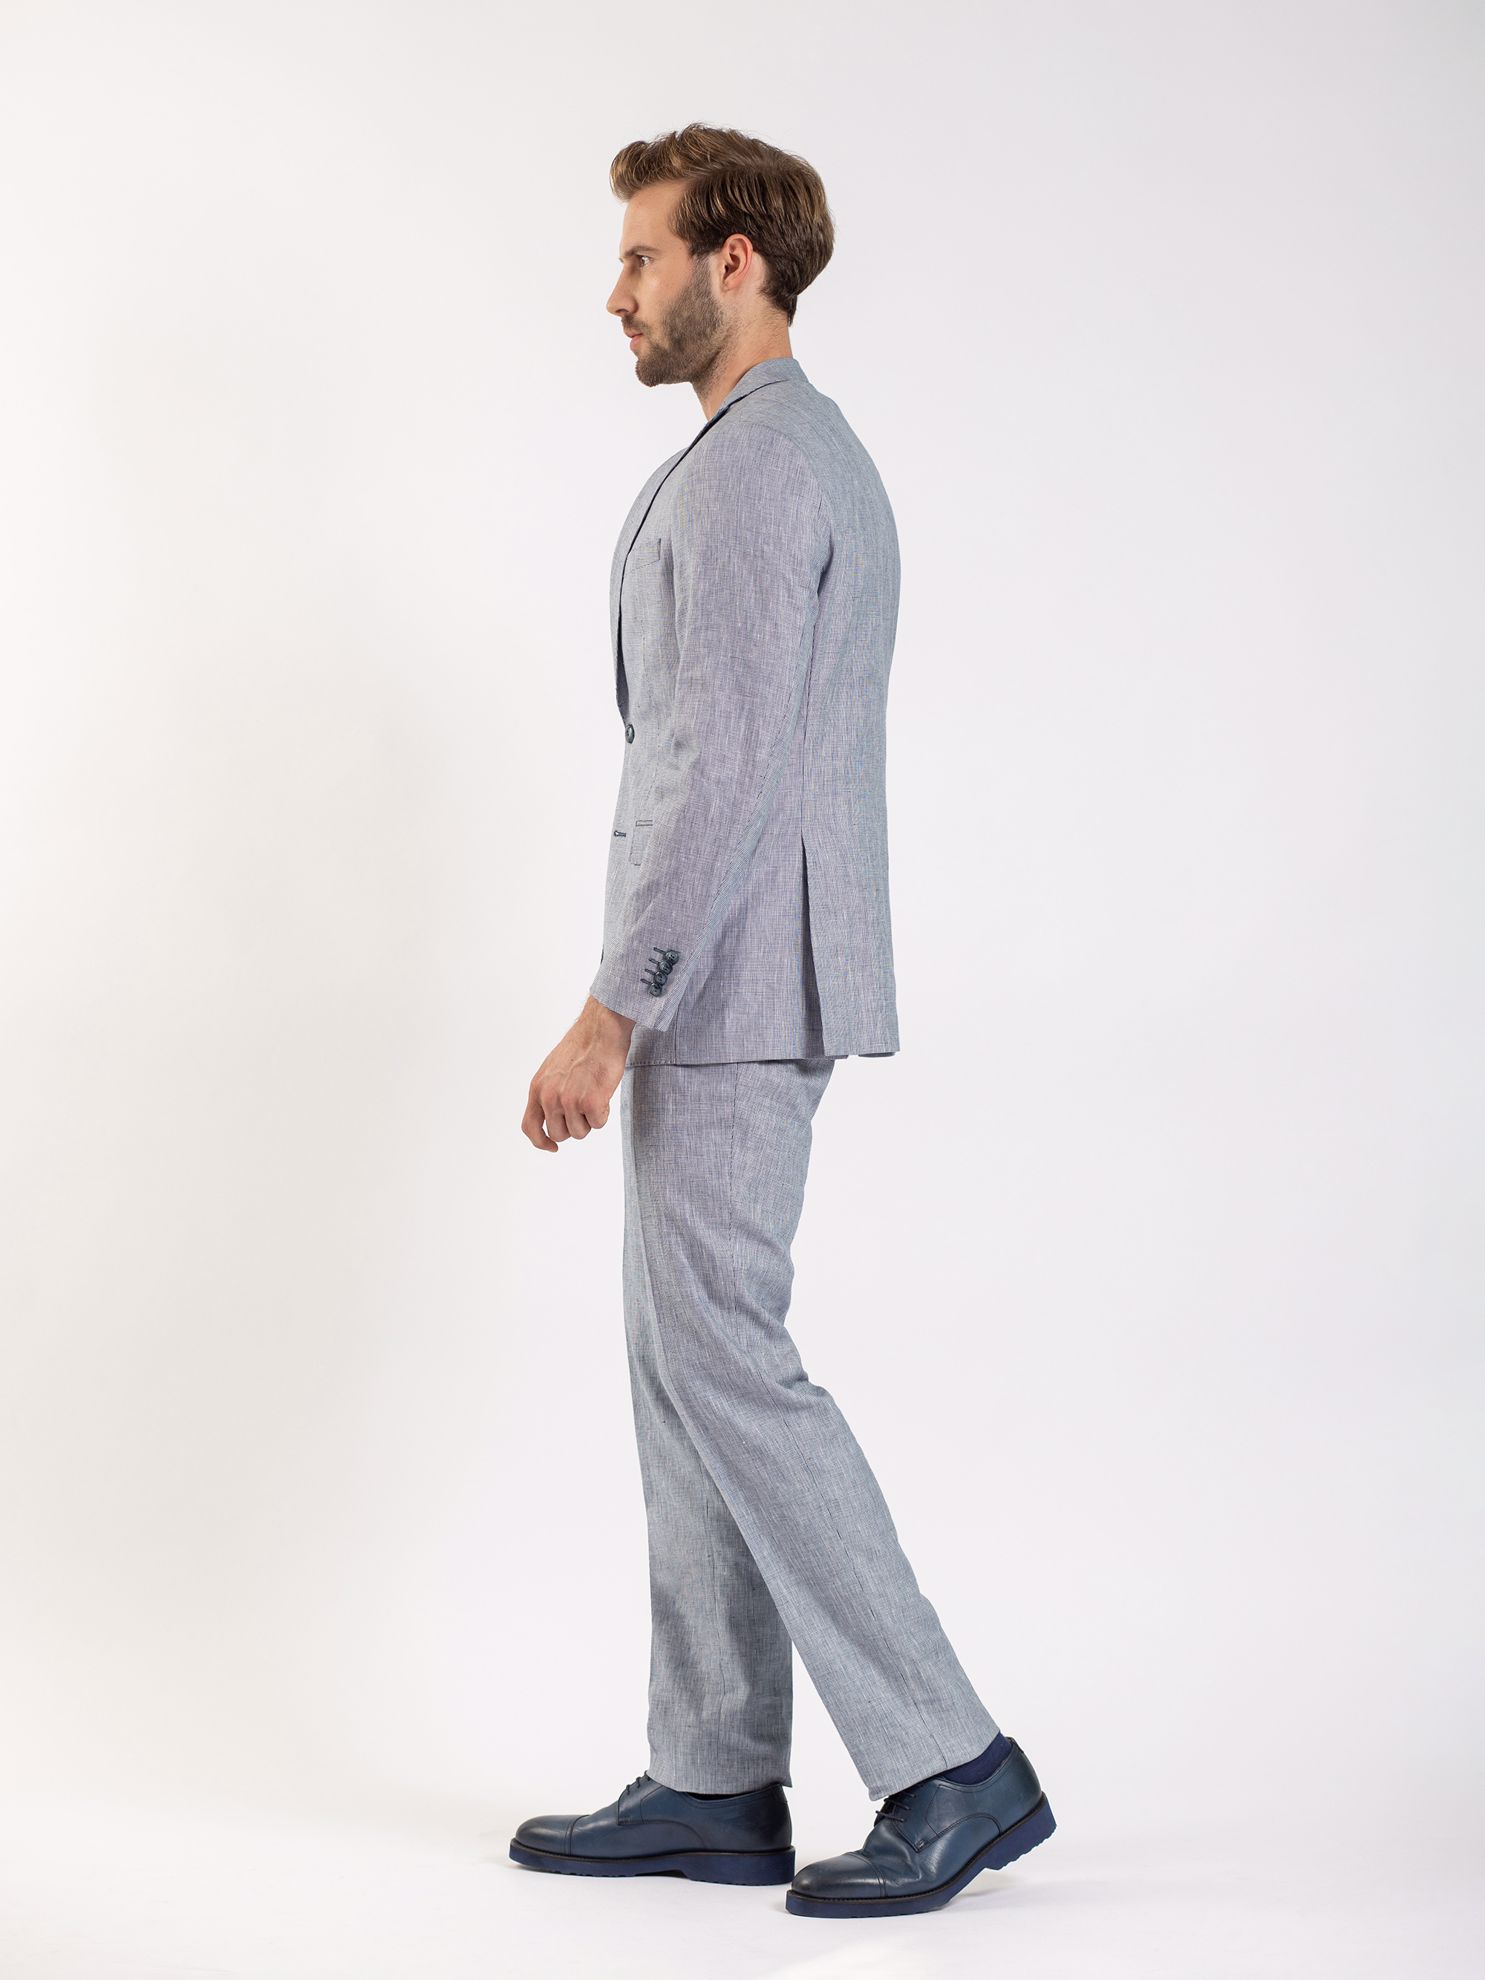 Karaca Erkek 6 Drop Takım Elbise-Lacivert. ürün görseli